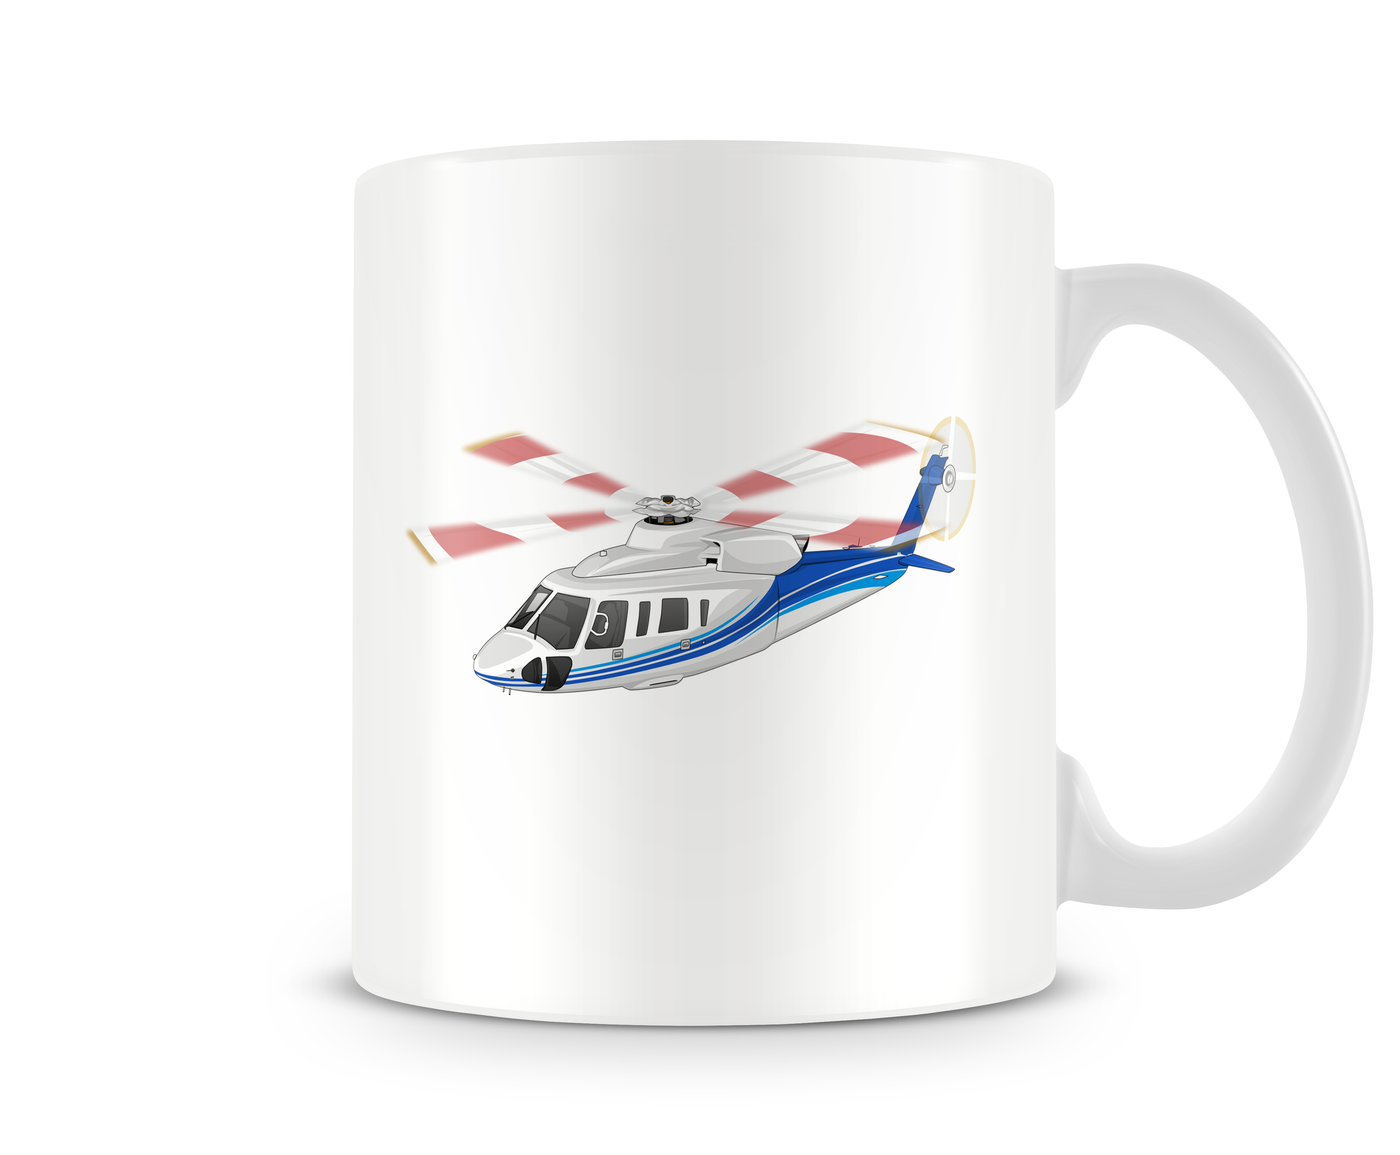 Sikorsky S-76D Mug - Aircraft Mugs